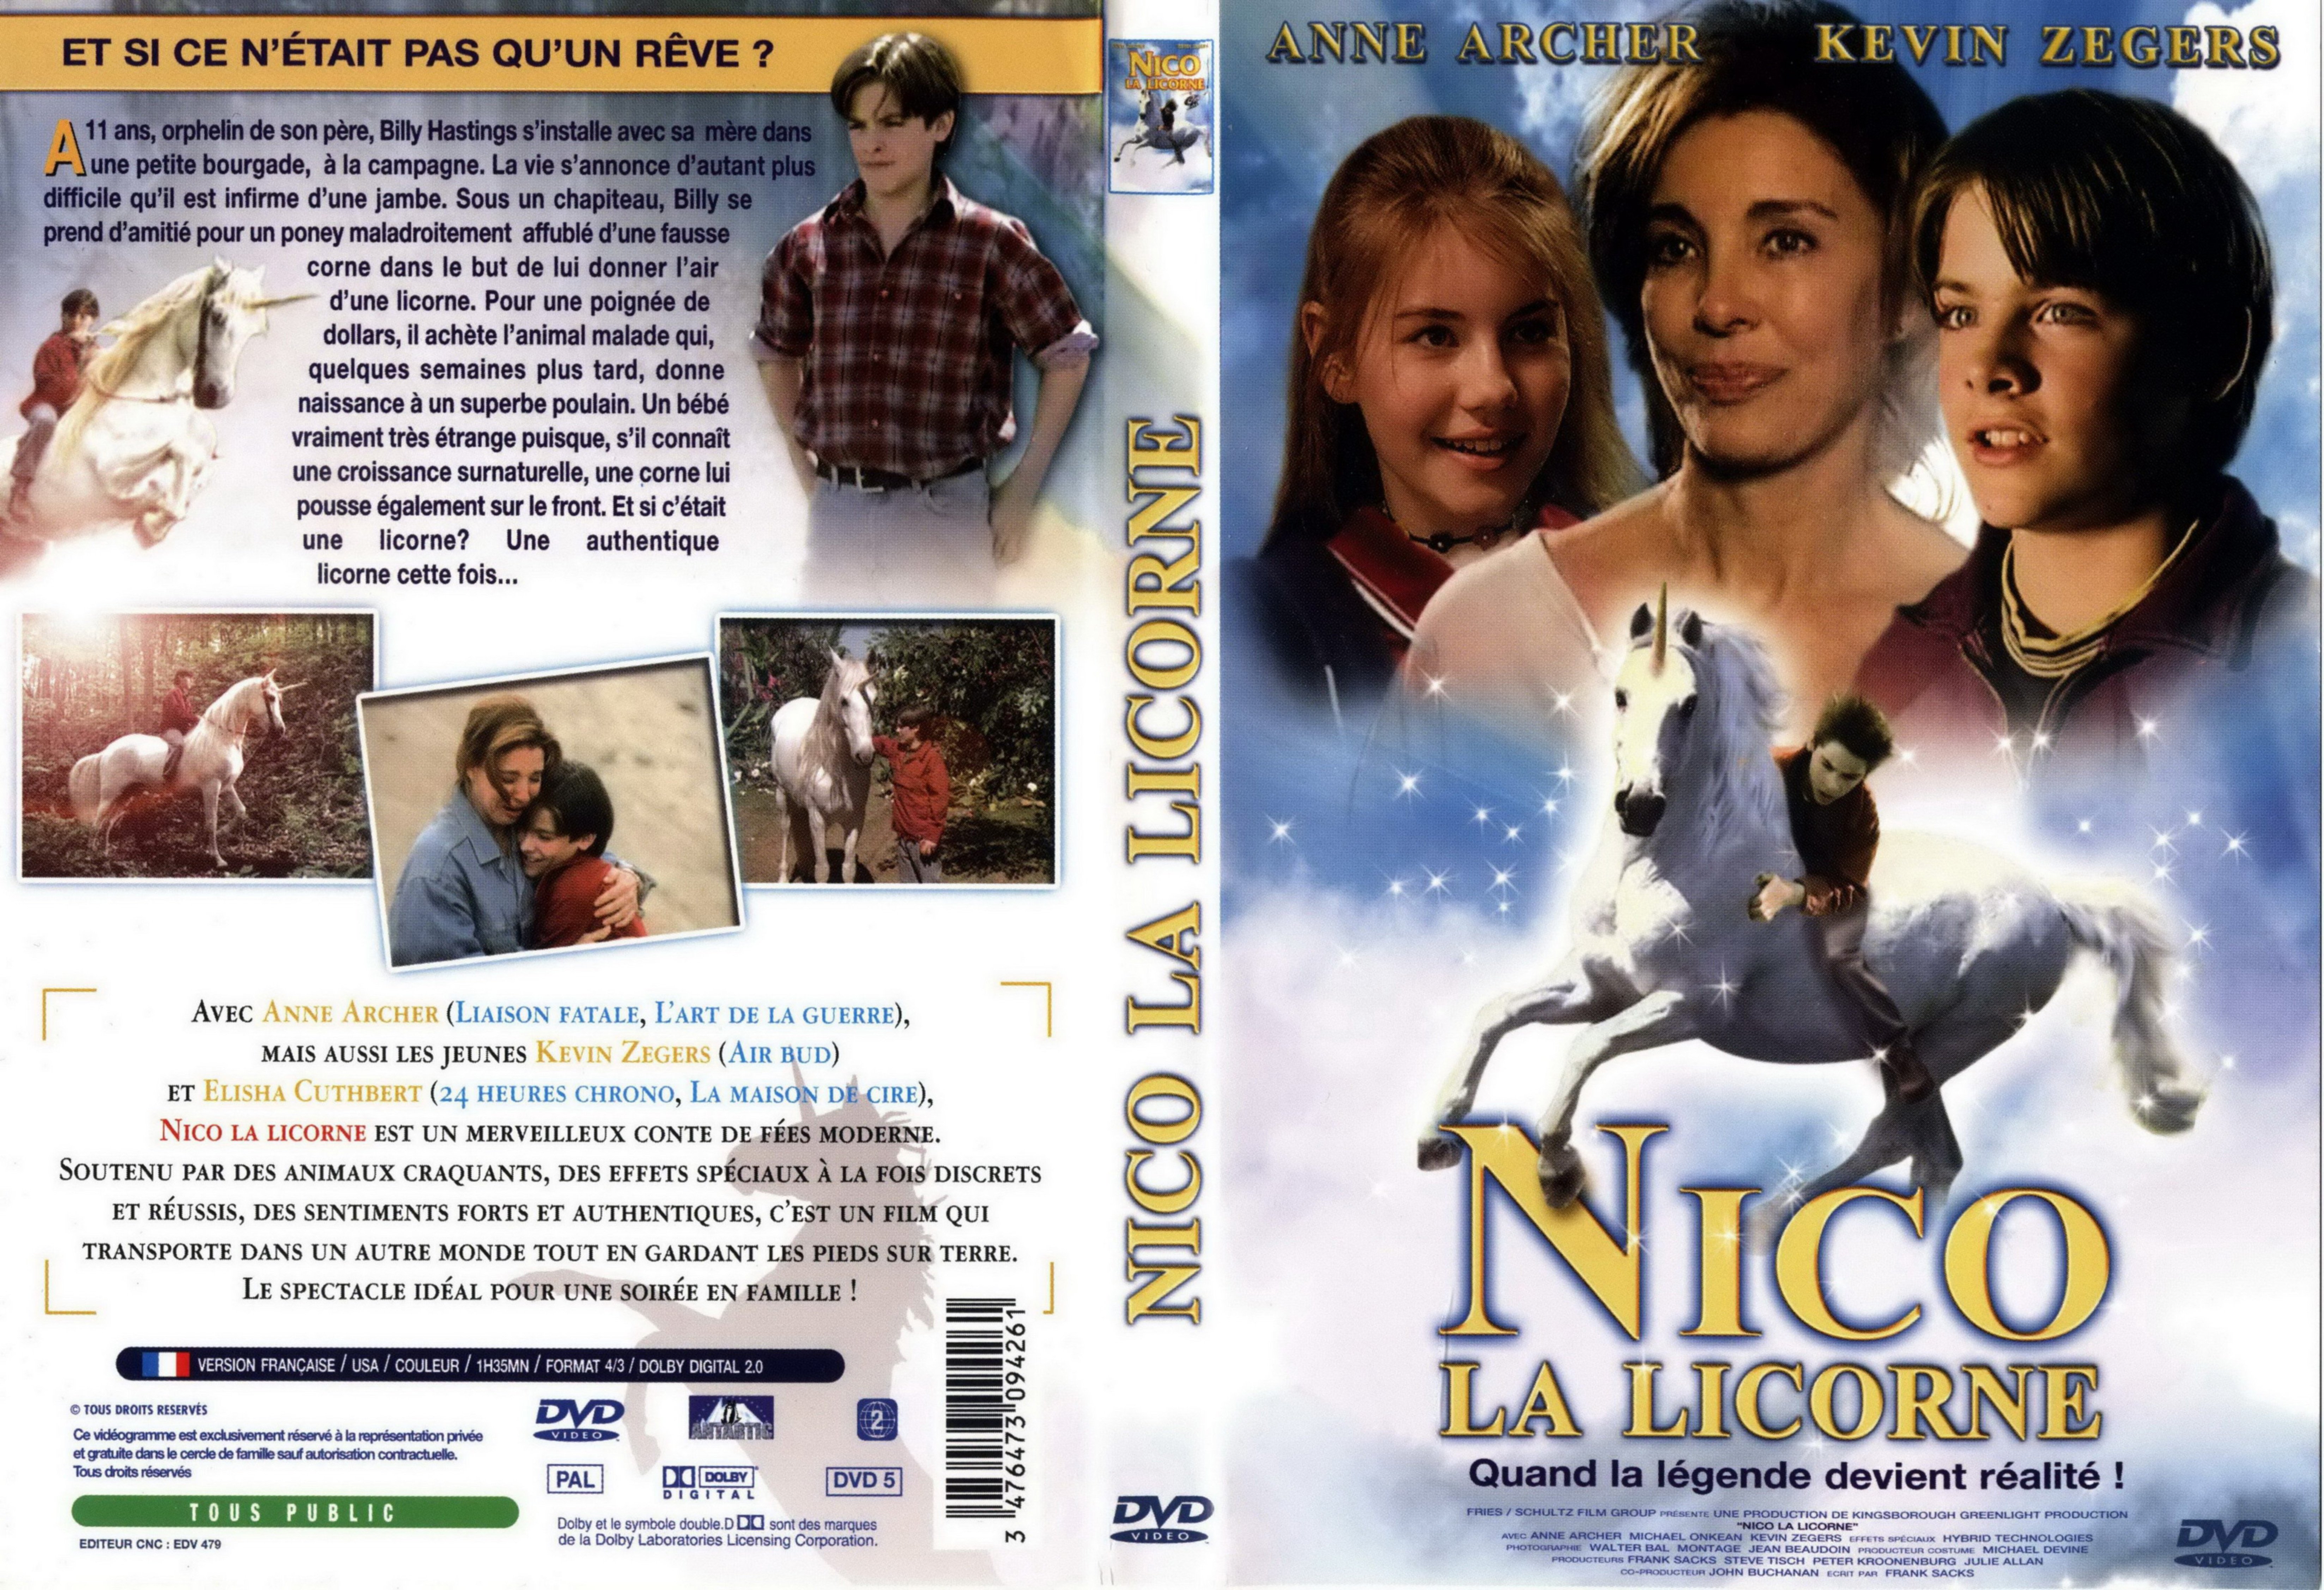 Jaquette DVD Nico la licorne v2